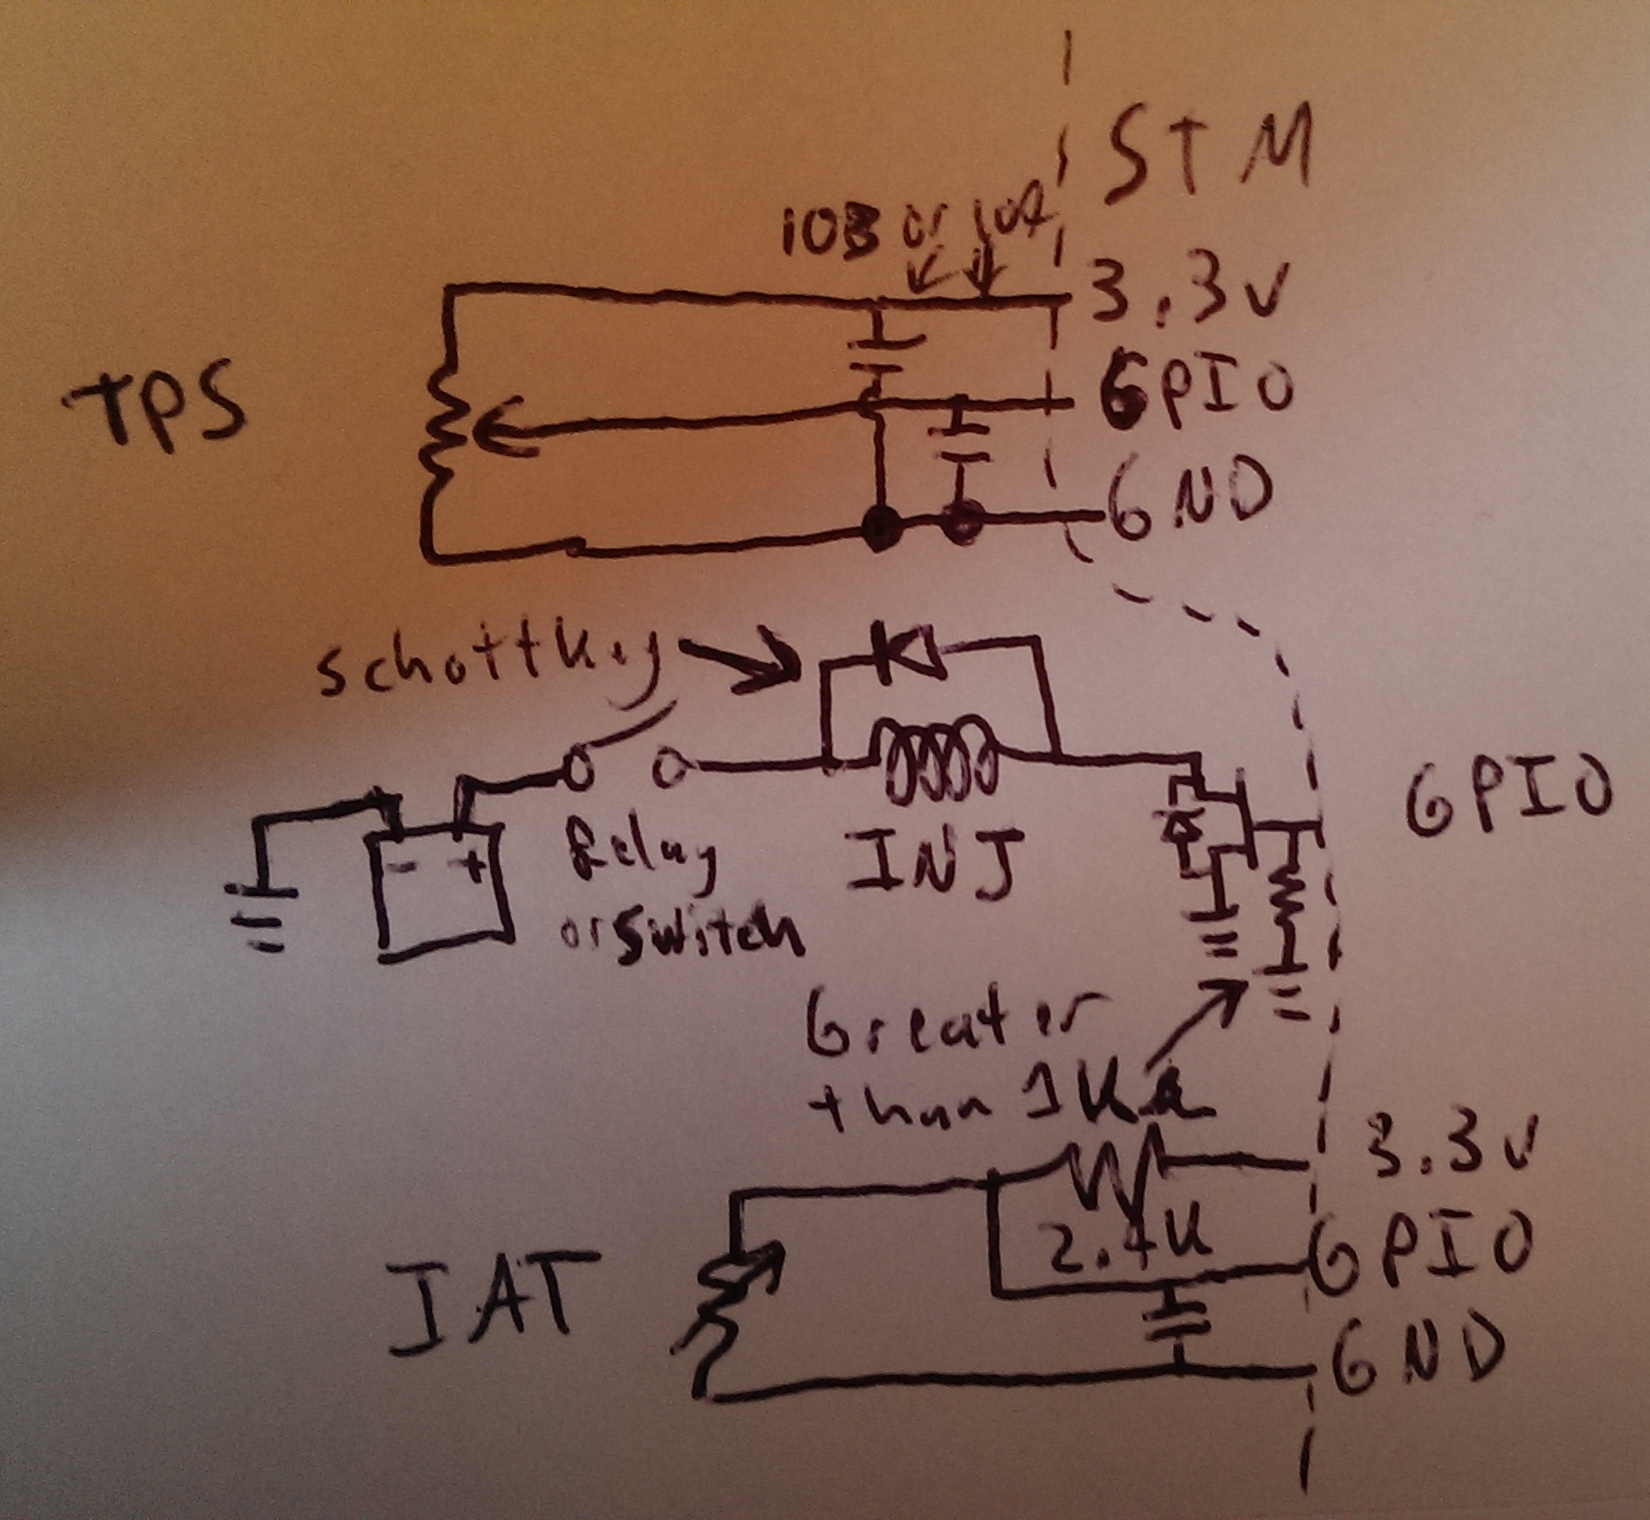 TPS-INJ-IAT_schematic.jpg